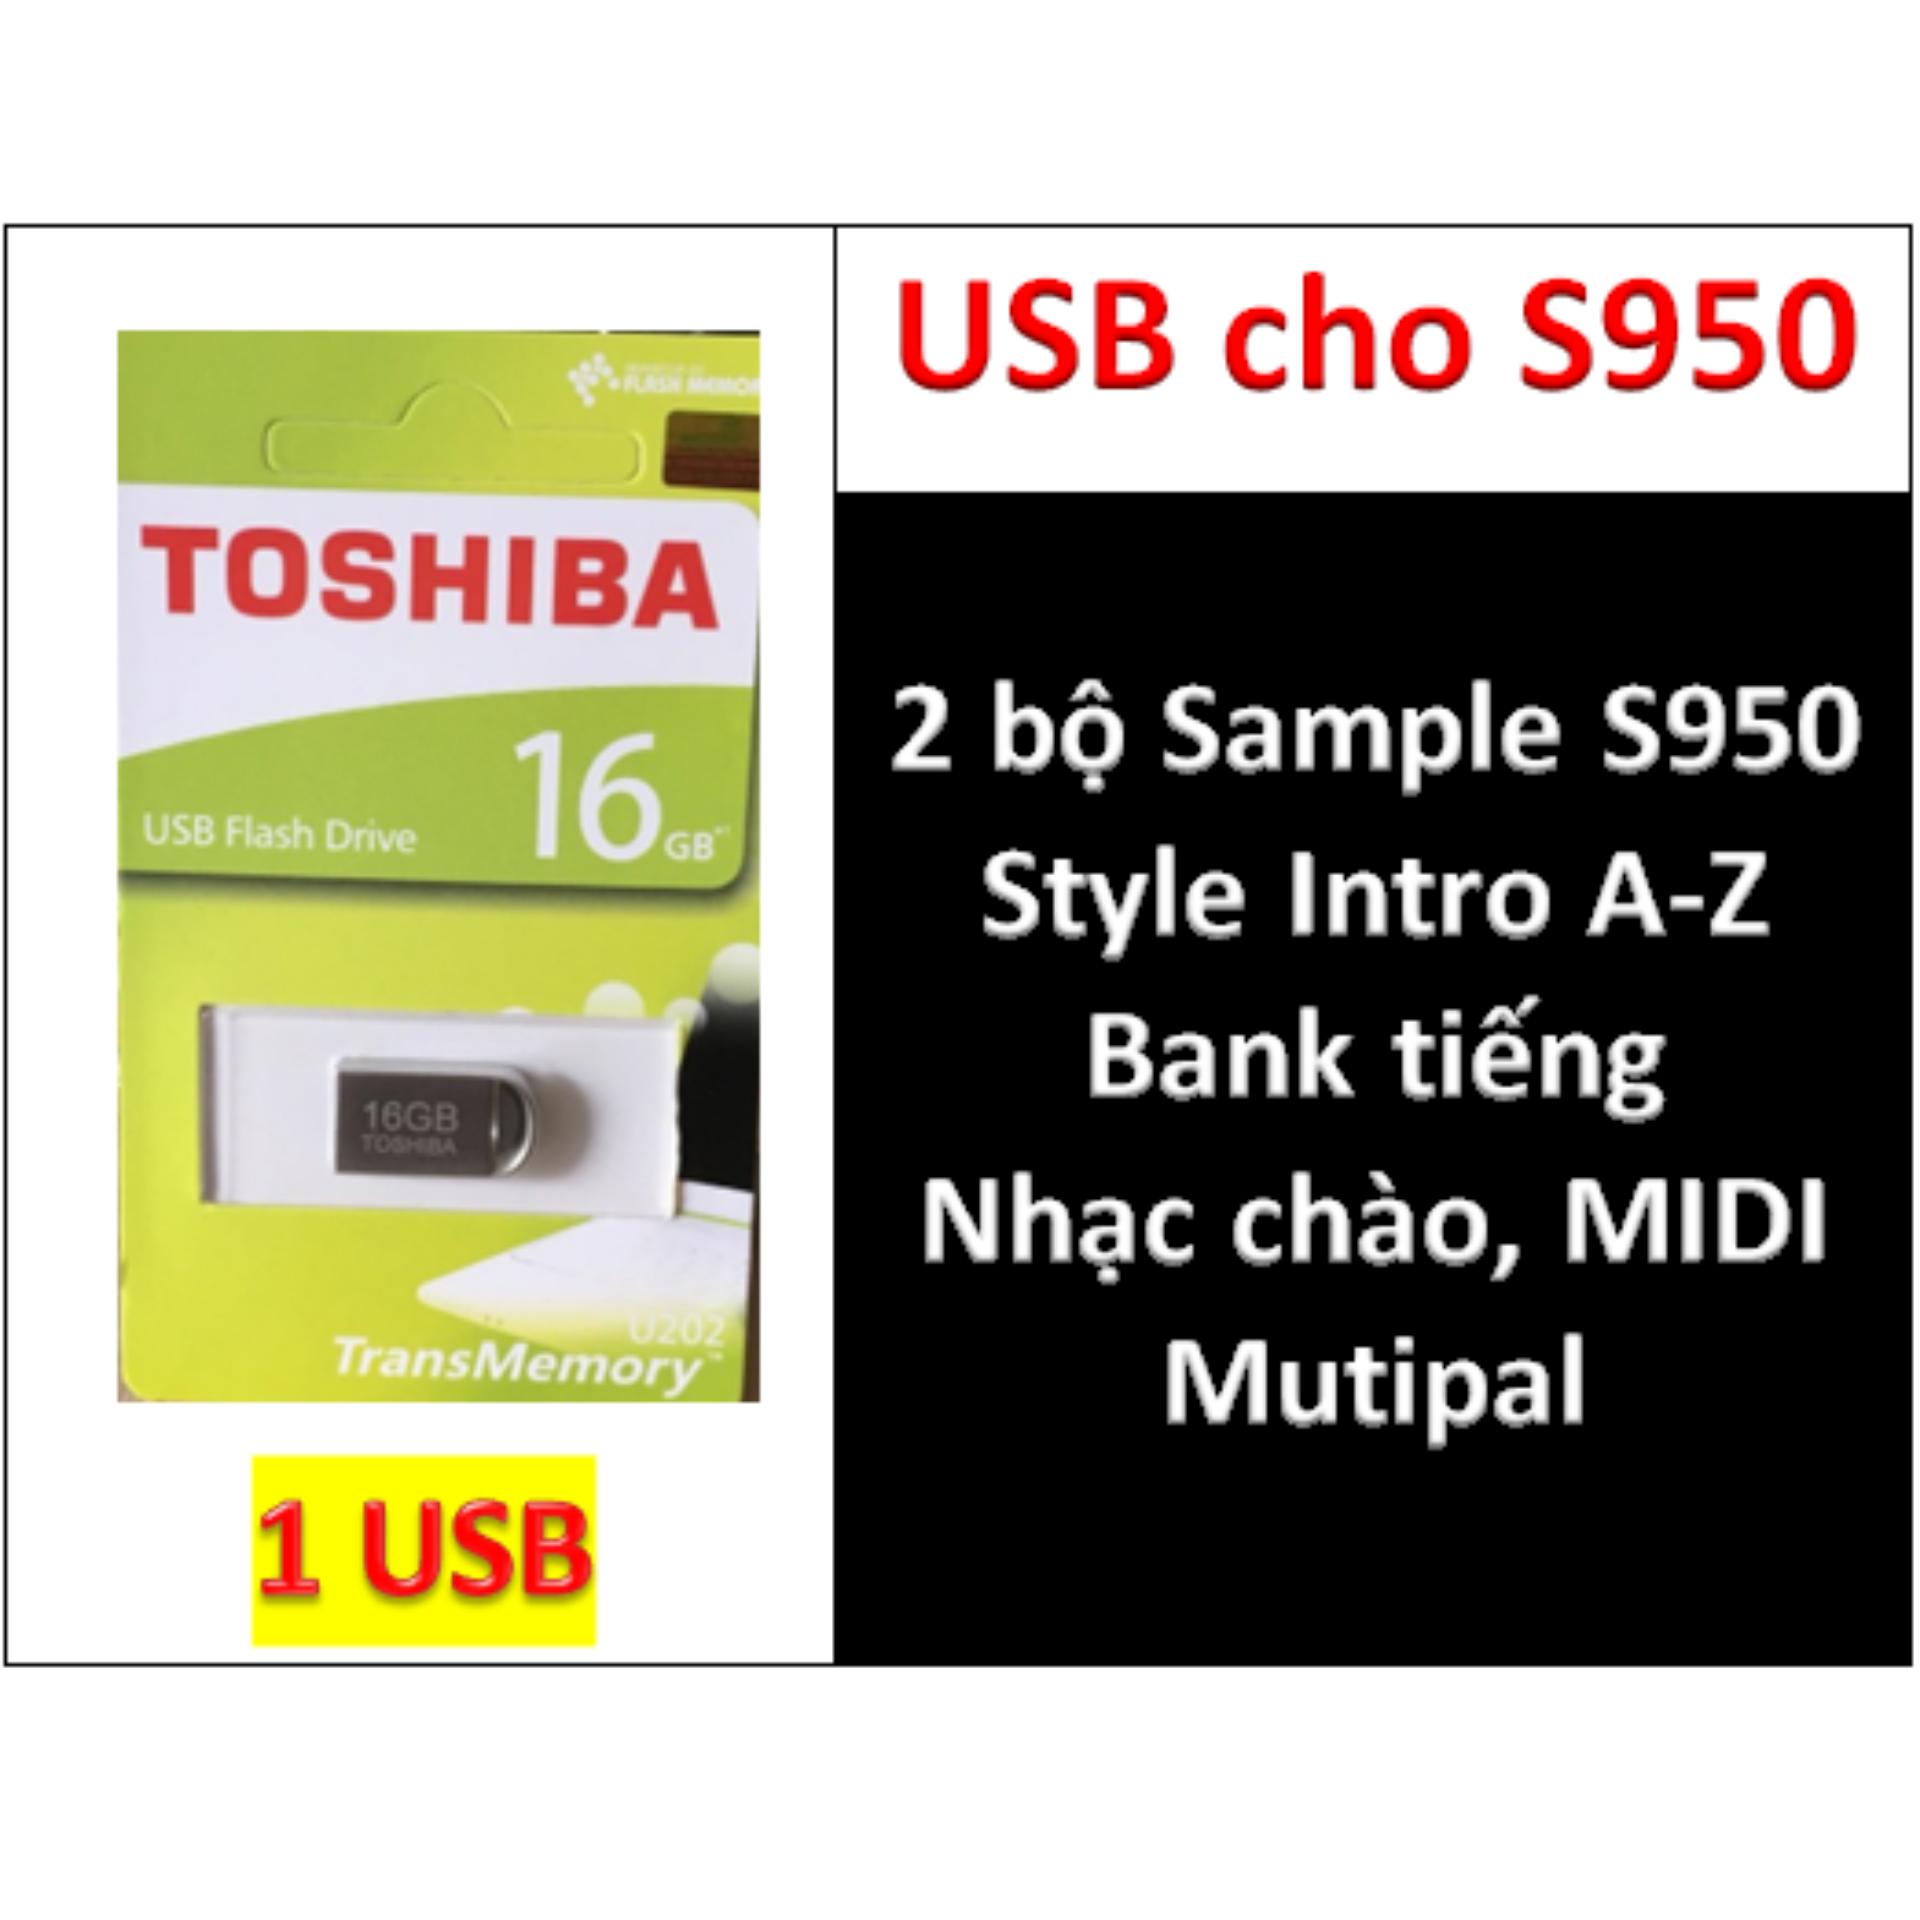 USB mini 2 BỘ Sample cho đàn organ yamaha PSR-S950, Style, nhạc chào, songbook, midi + Full dữ liệu làm...